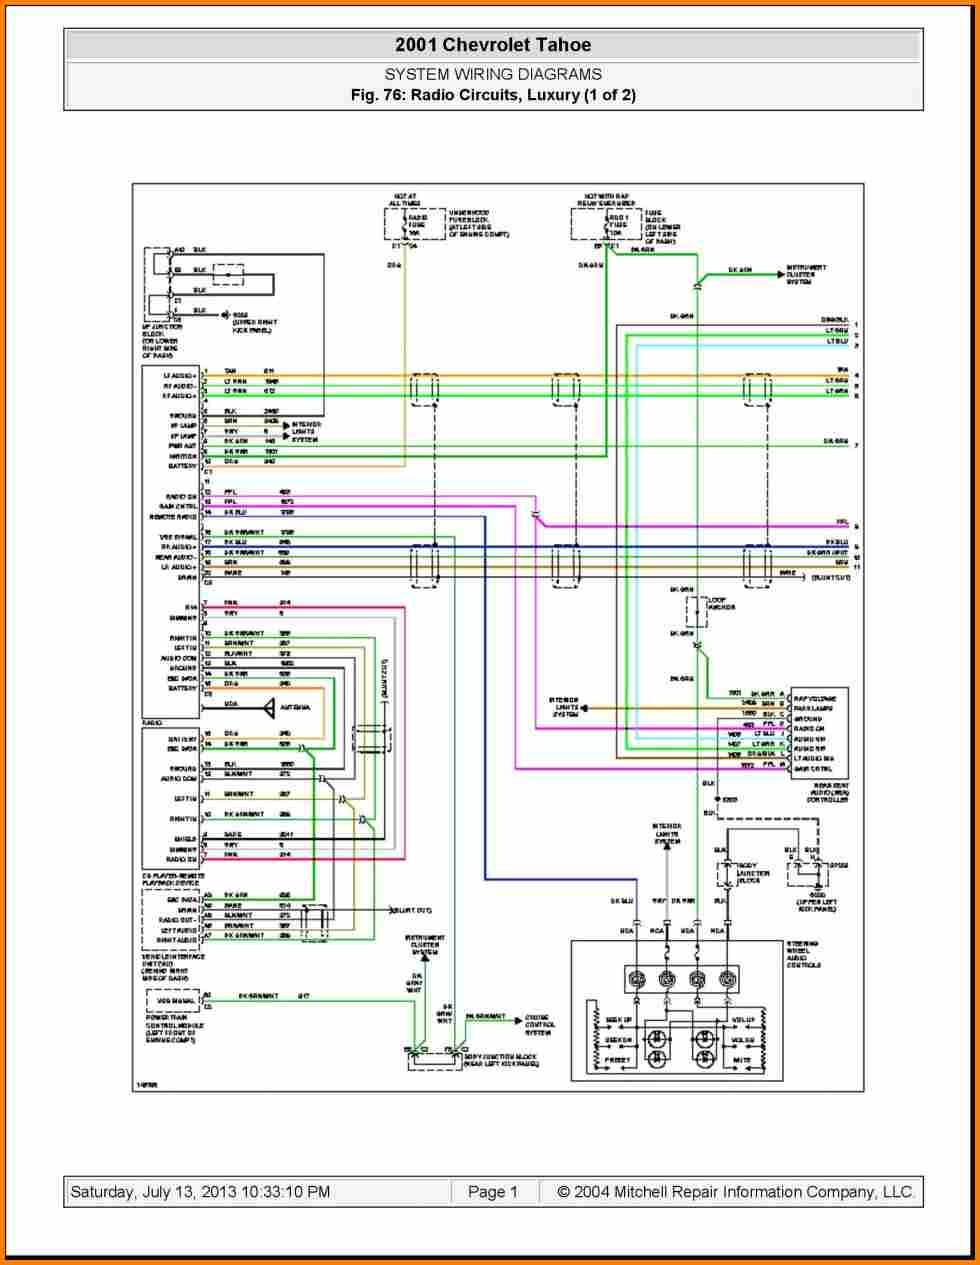 2003 chevy silverado radio wiring diagram elvenlabs within